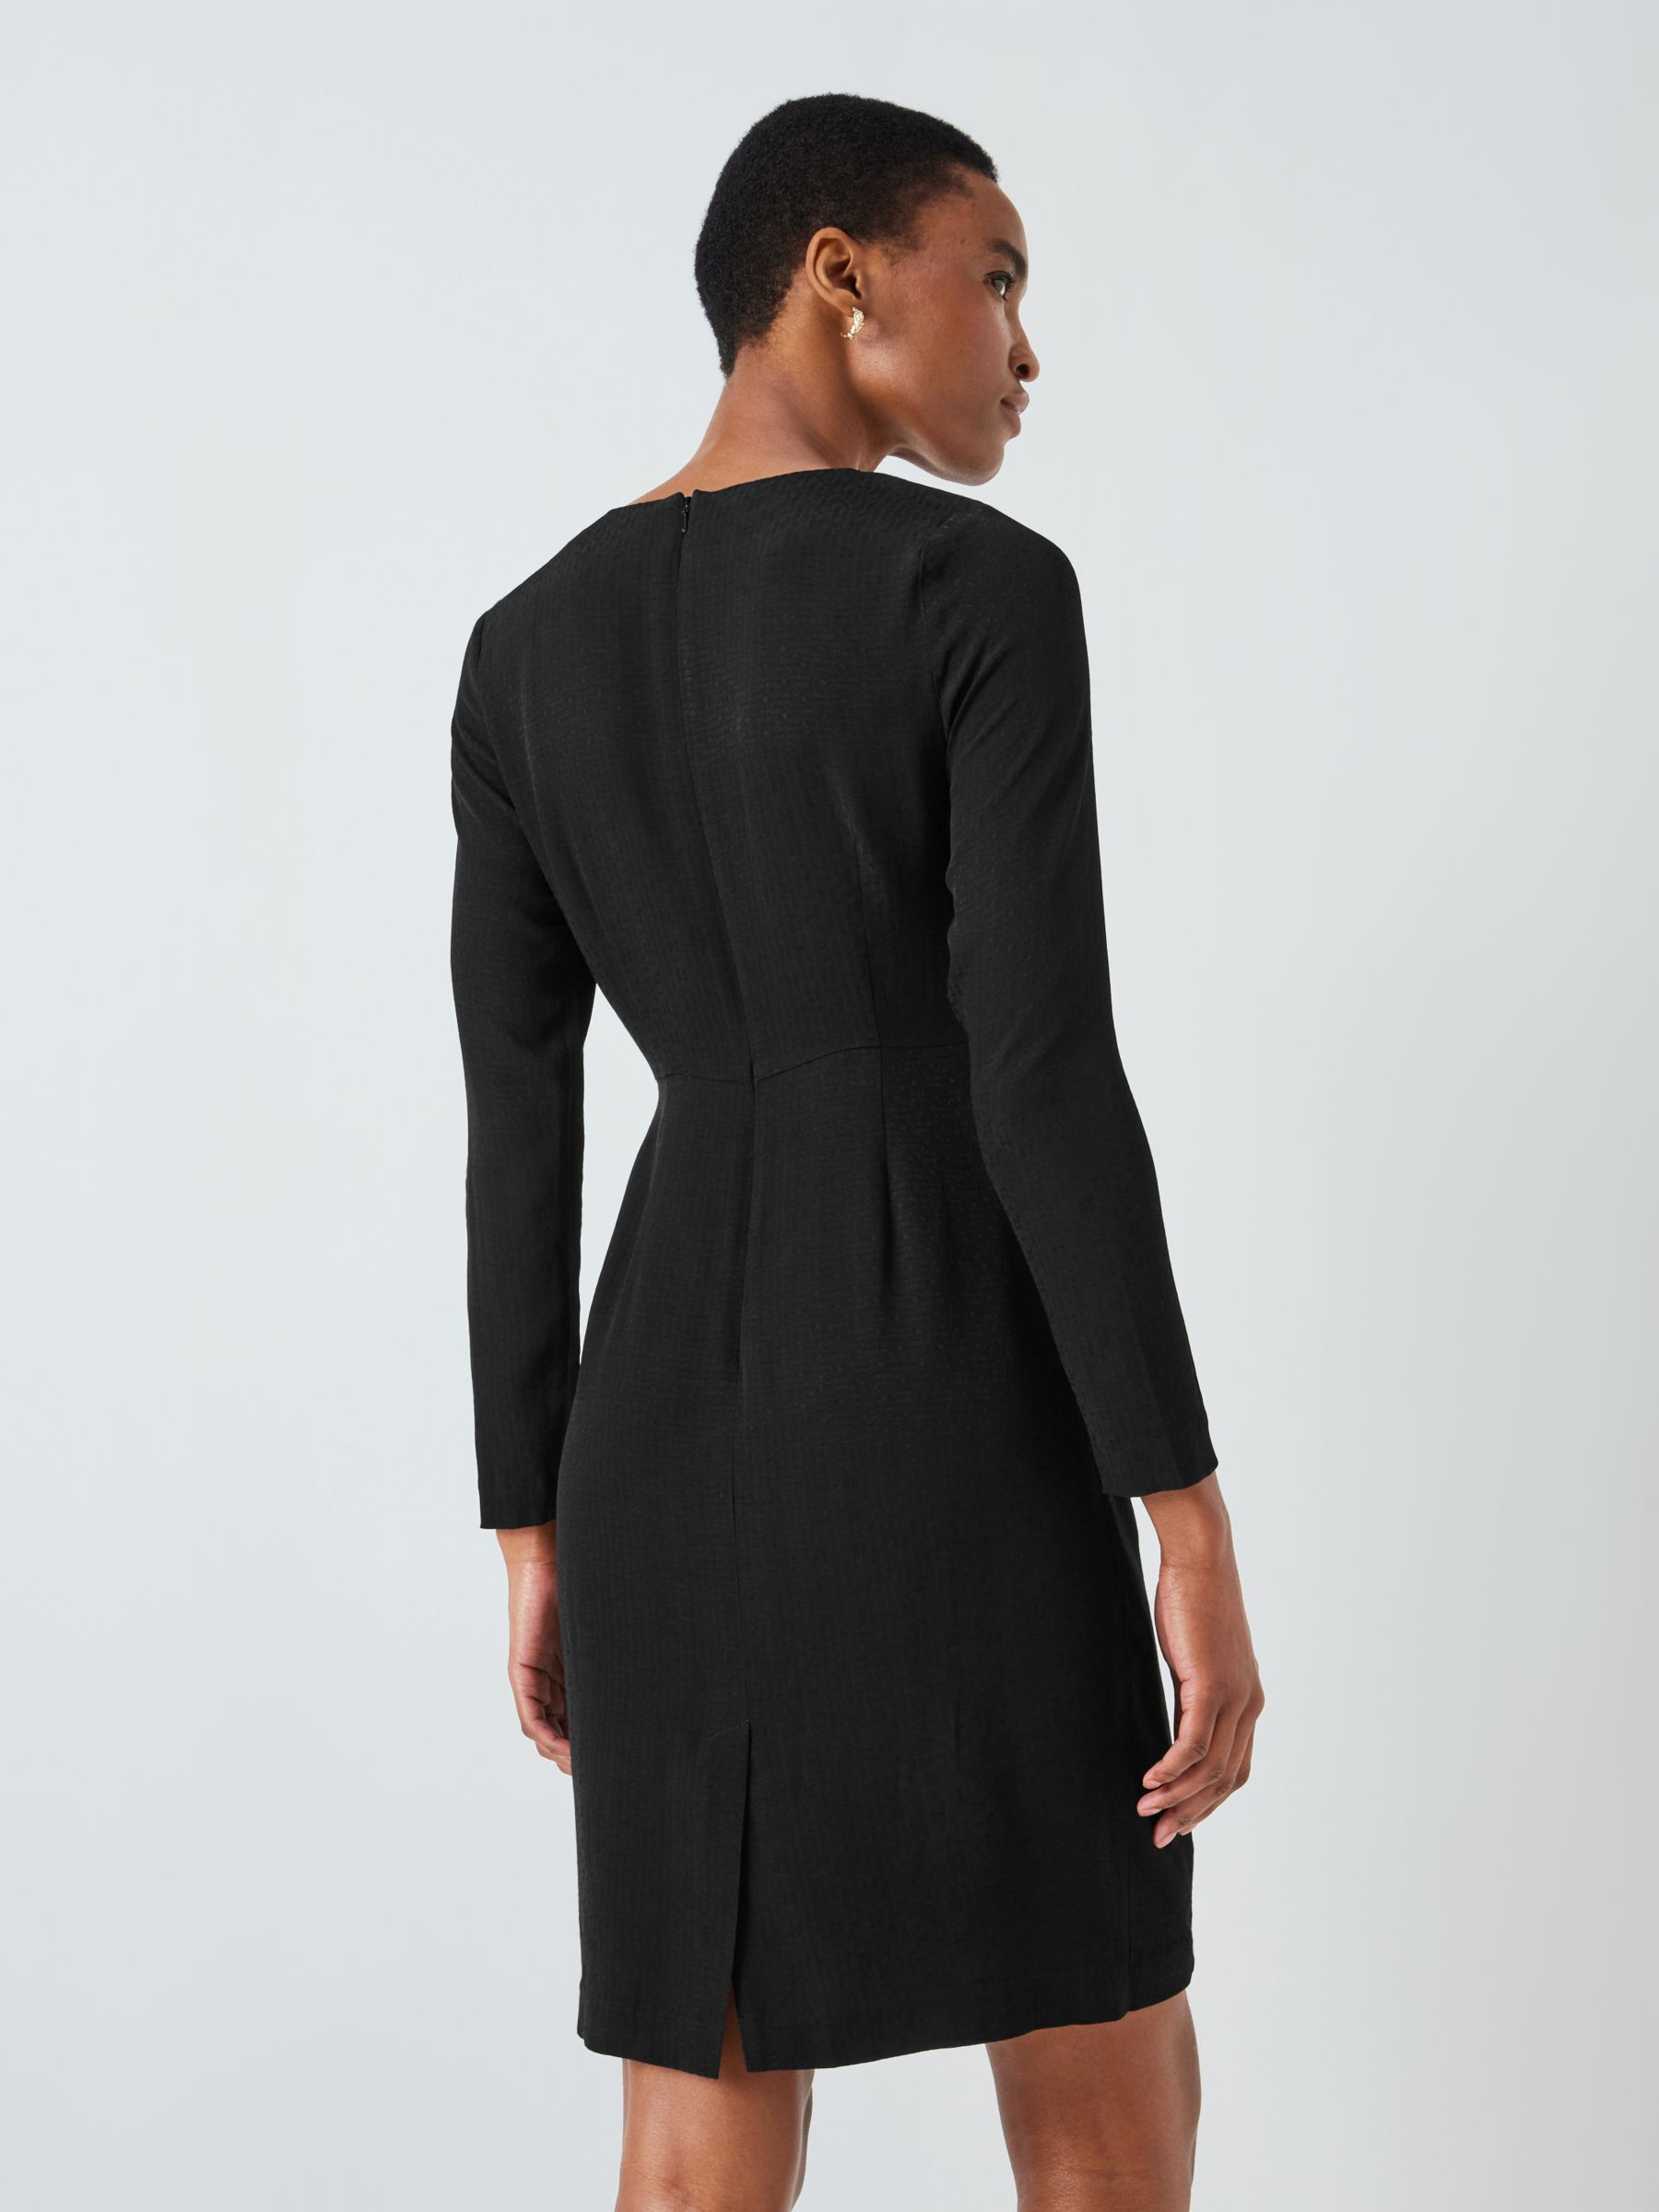 John Lewis Jacquard Dress, Black at John Lewis & Partners